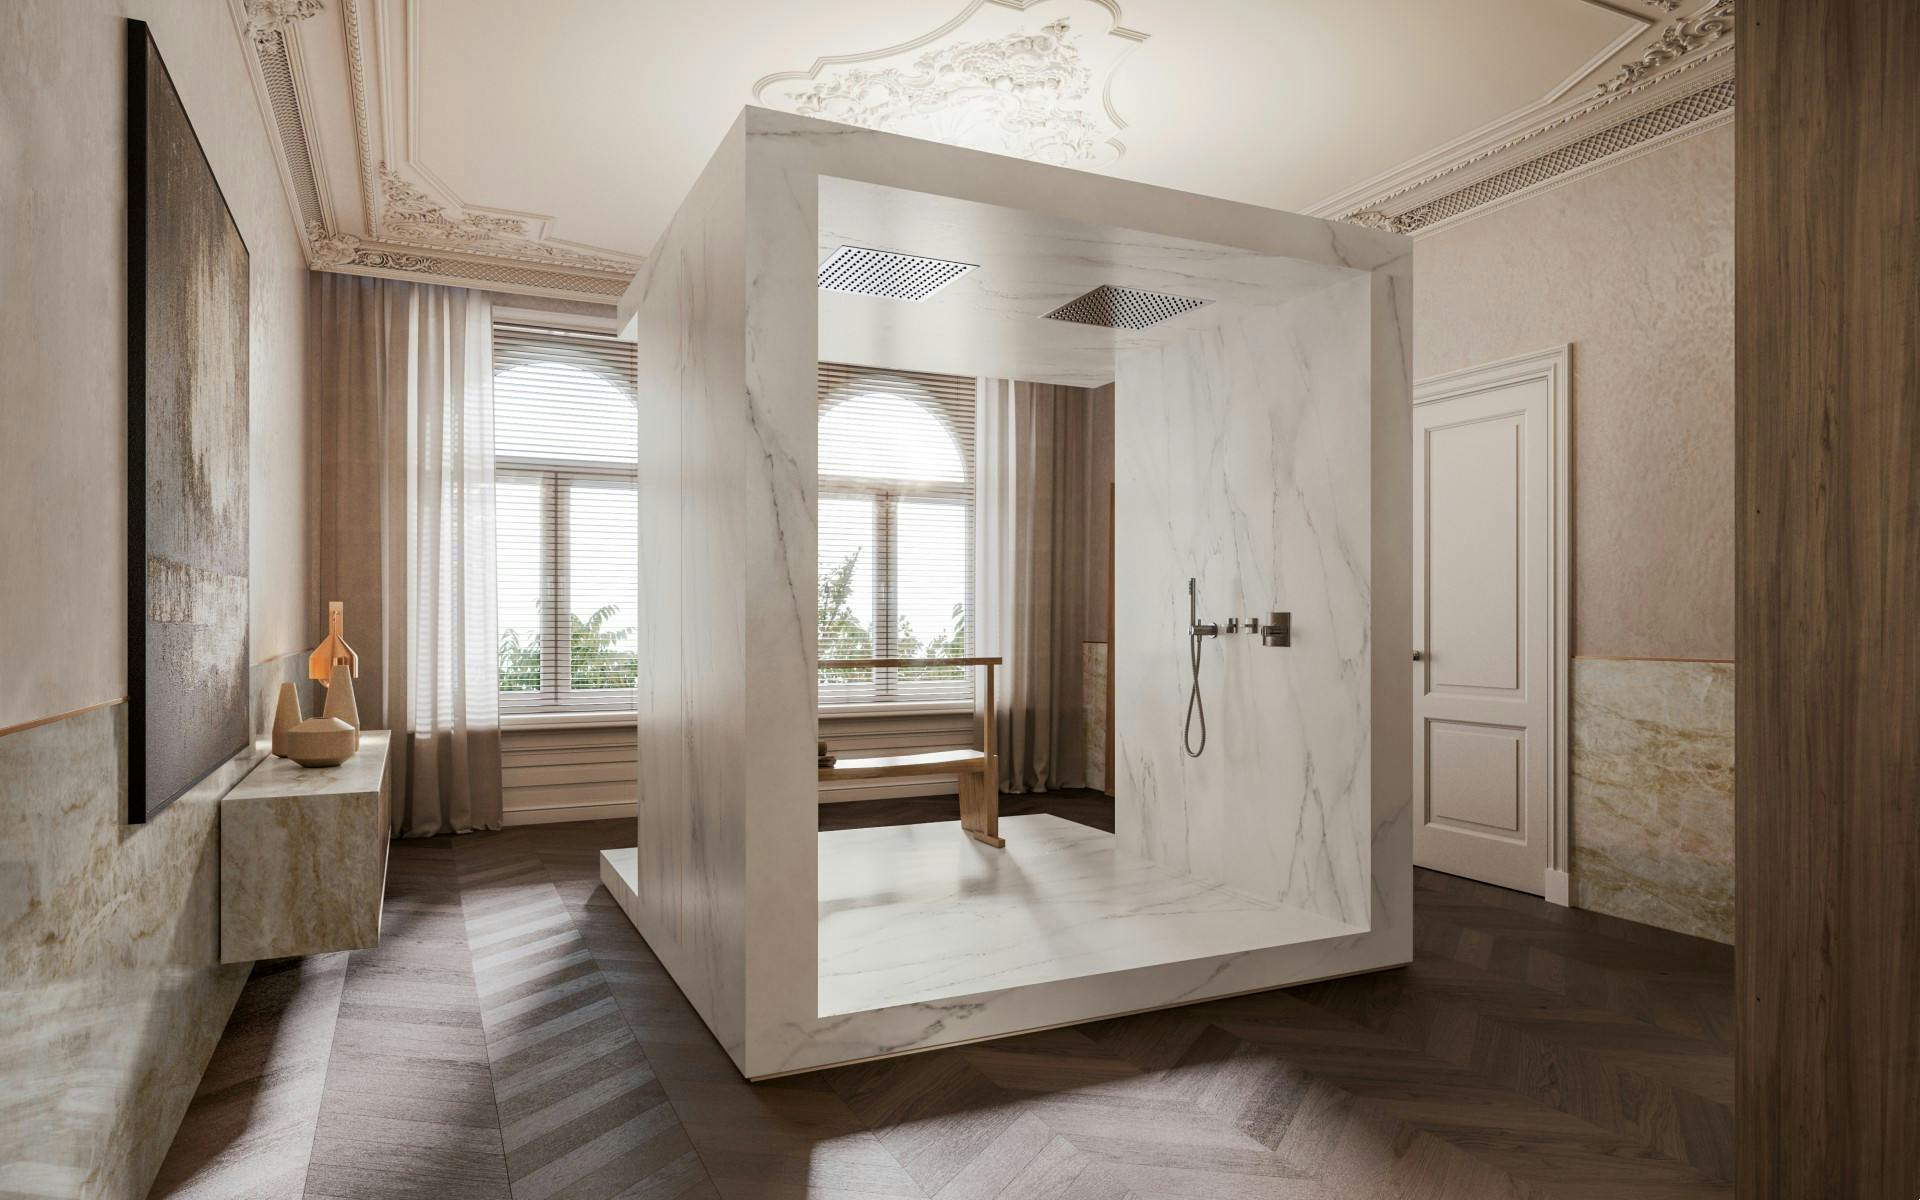 Numero immagine 32 della sezione corrente di {{The perfect bathroom according to Remy Meijers}} di Cosentino Italia